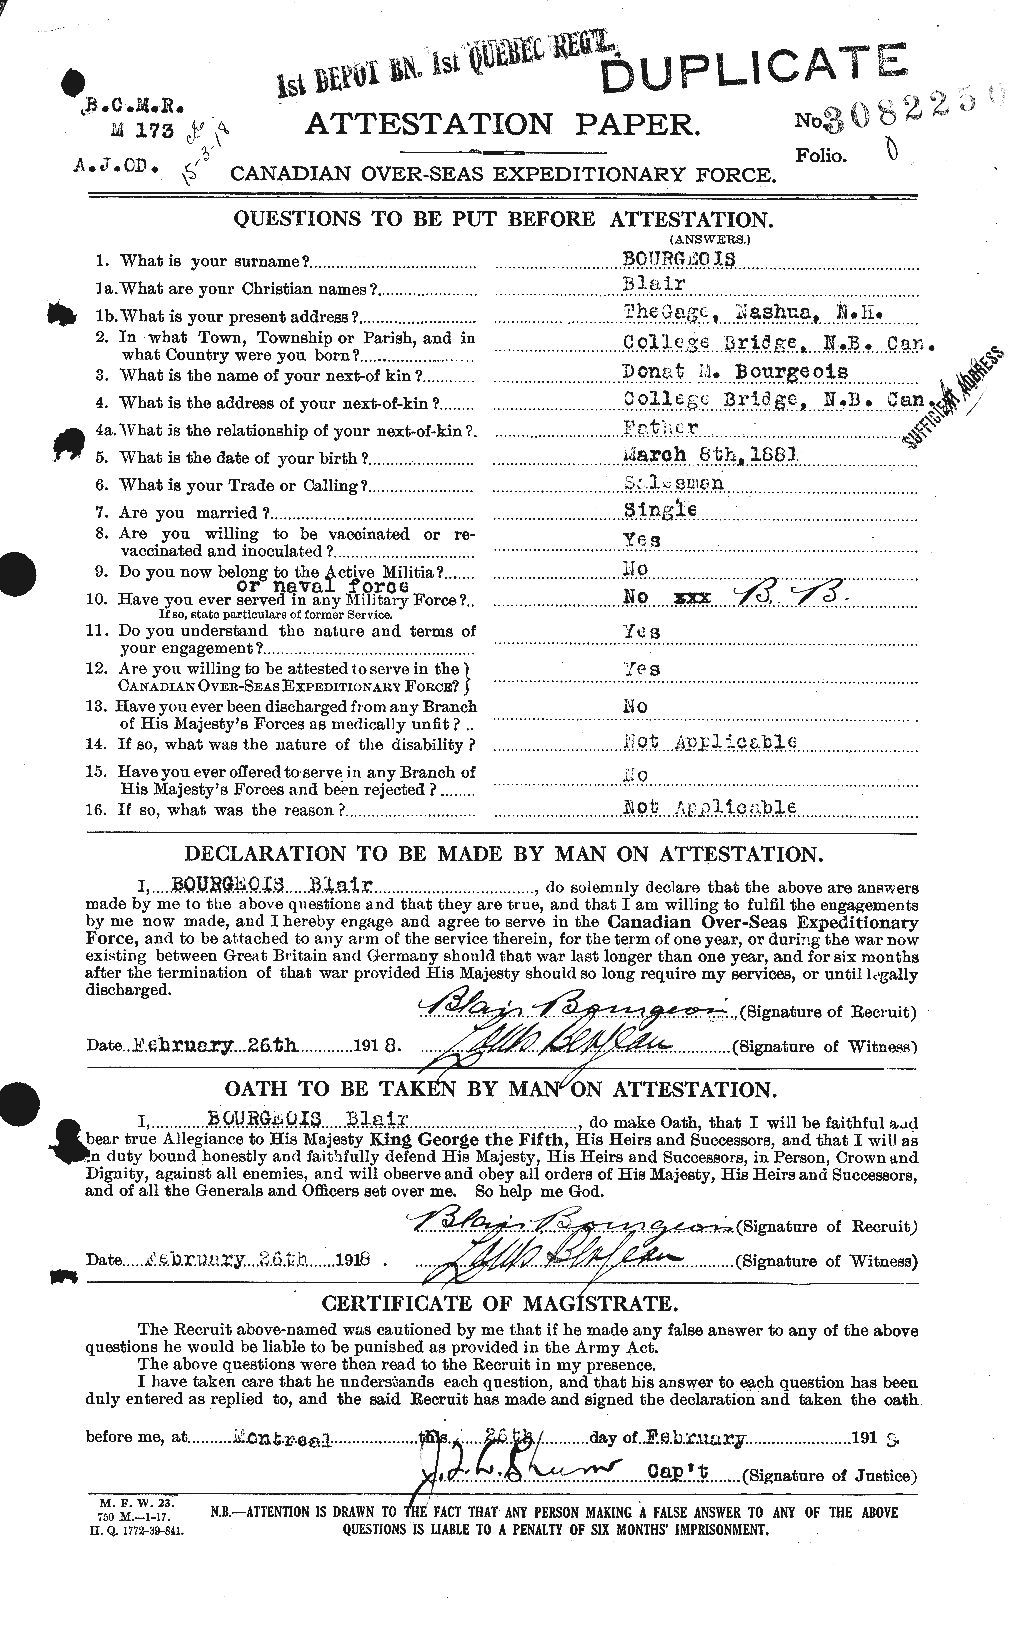 Dossiers du Personnel de la Première Guerre mondiale - CEC 253882a